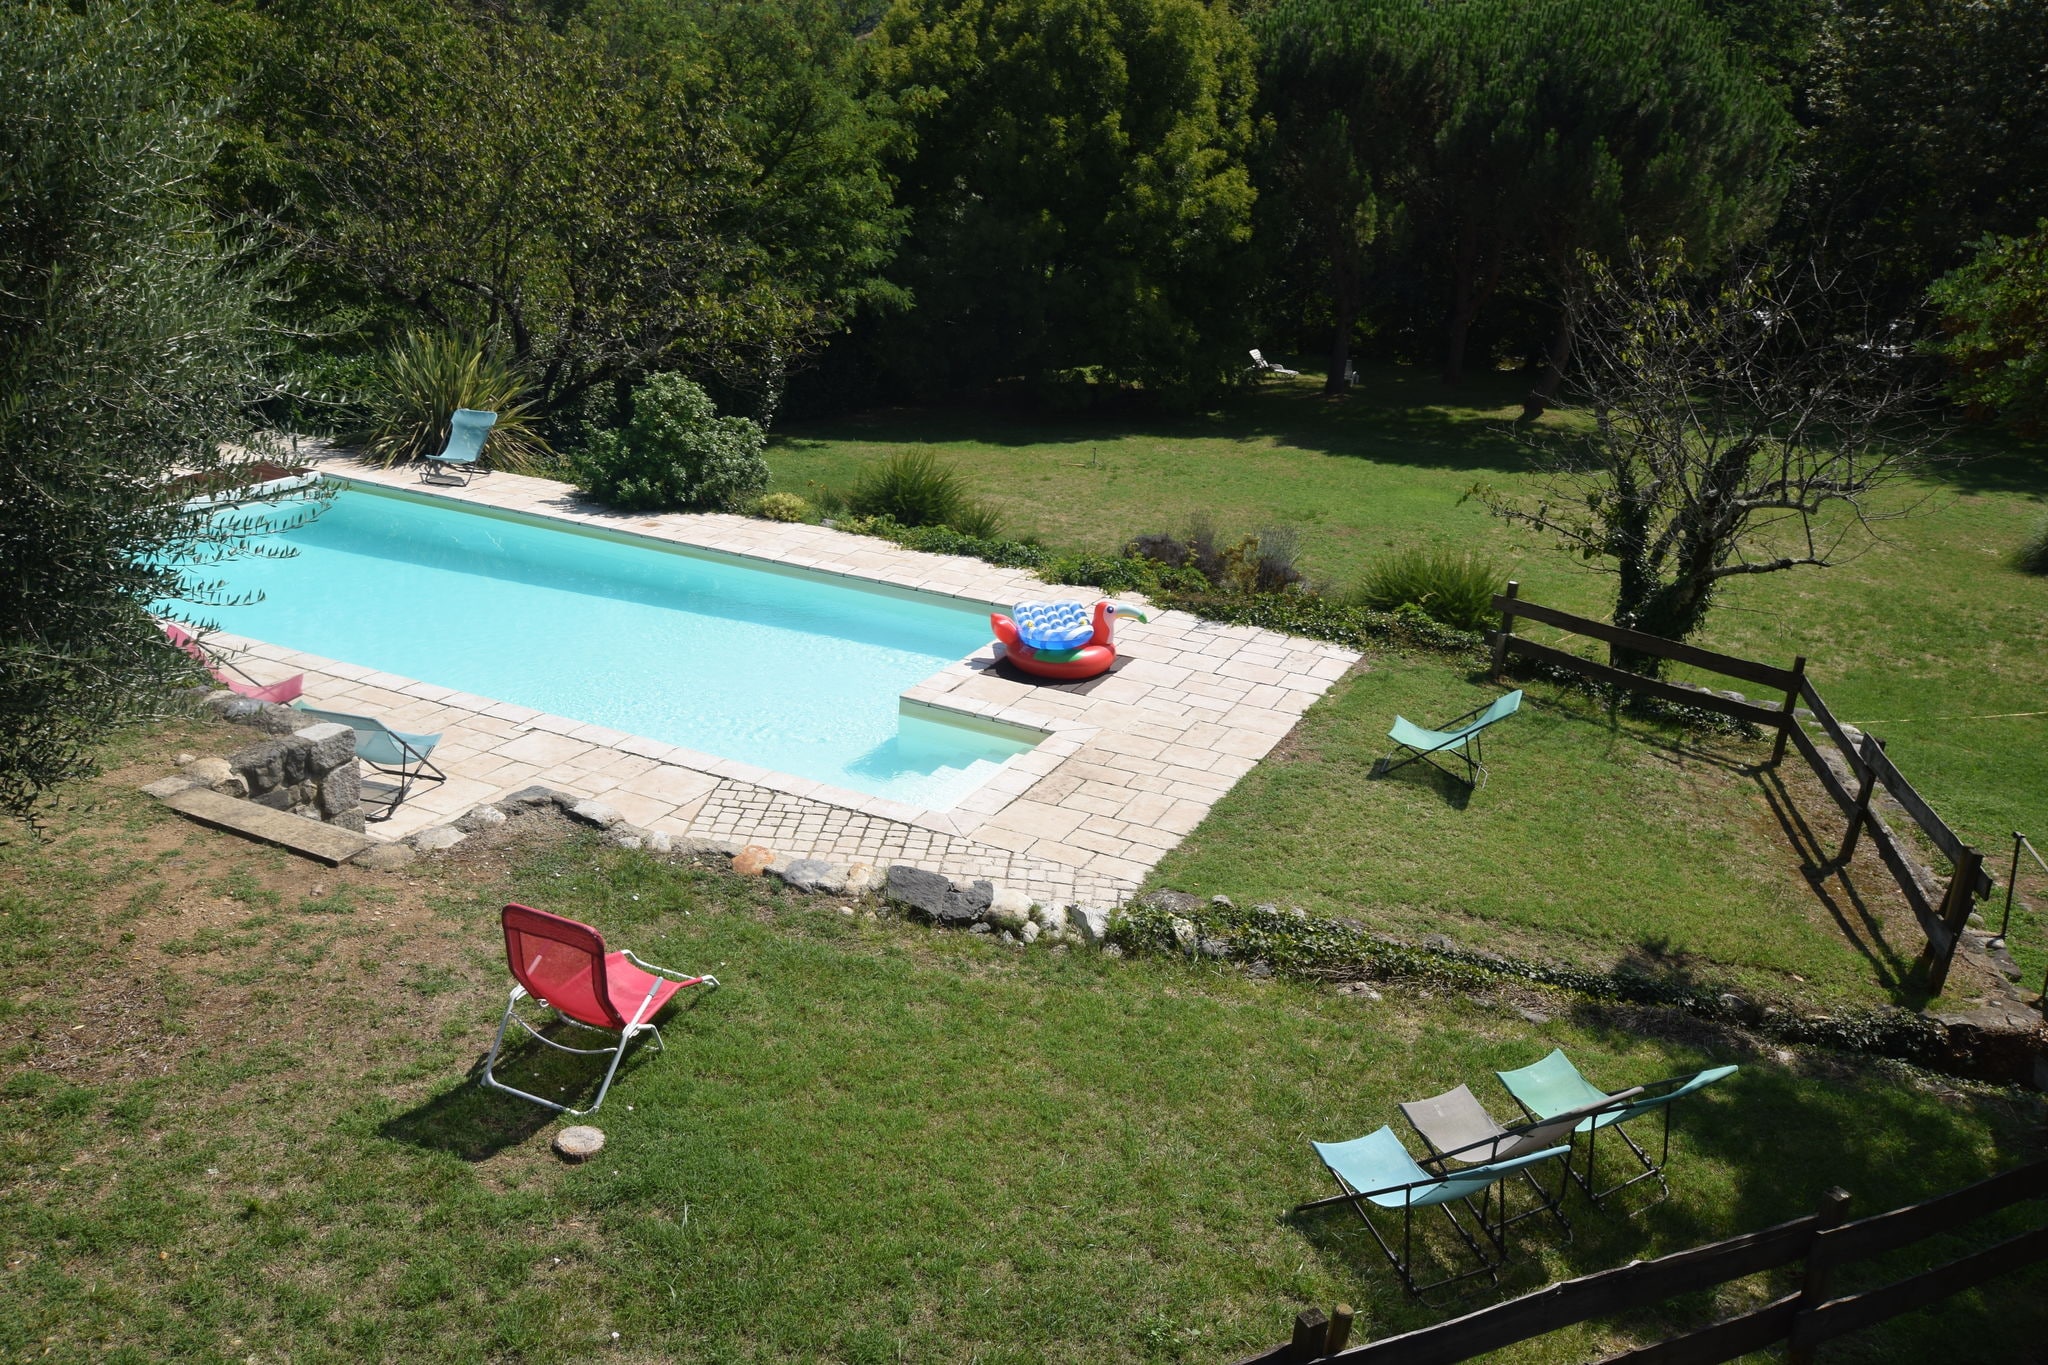 Halfvrijstaand stijlvol vakantiehuis met grote tuin direct aan de rivier Ardèche